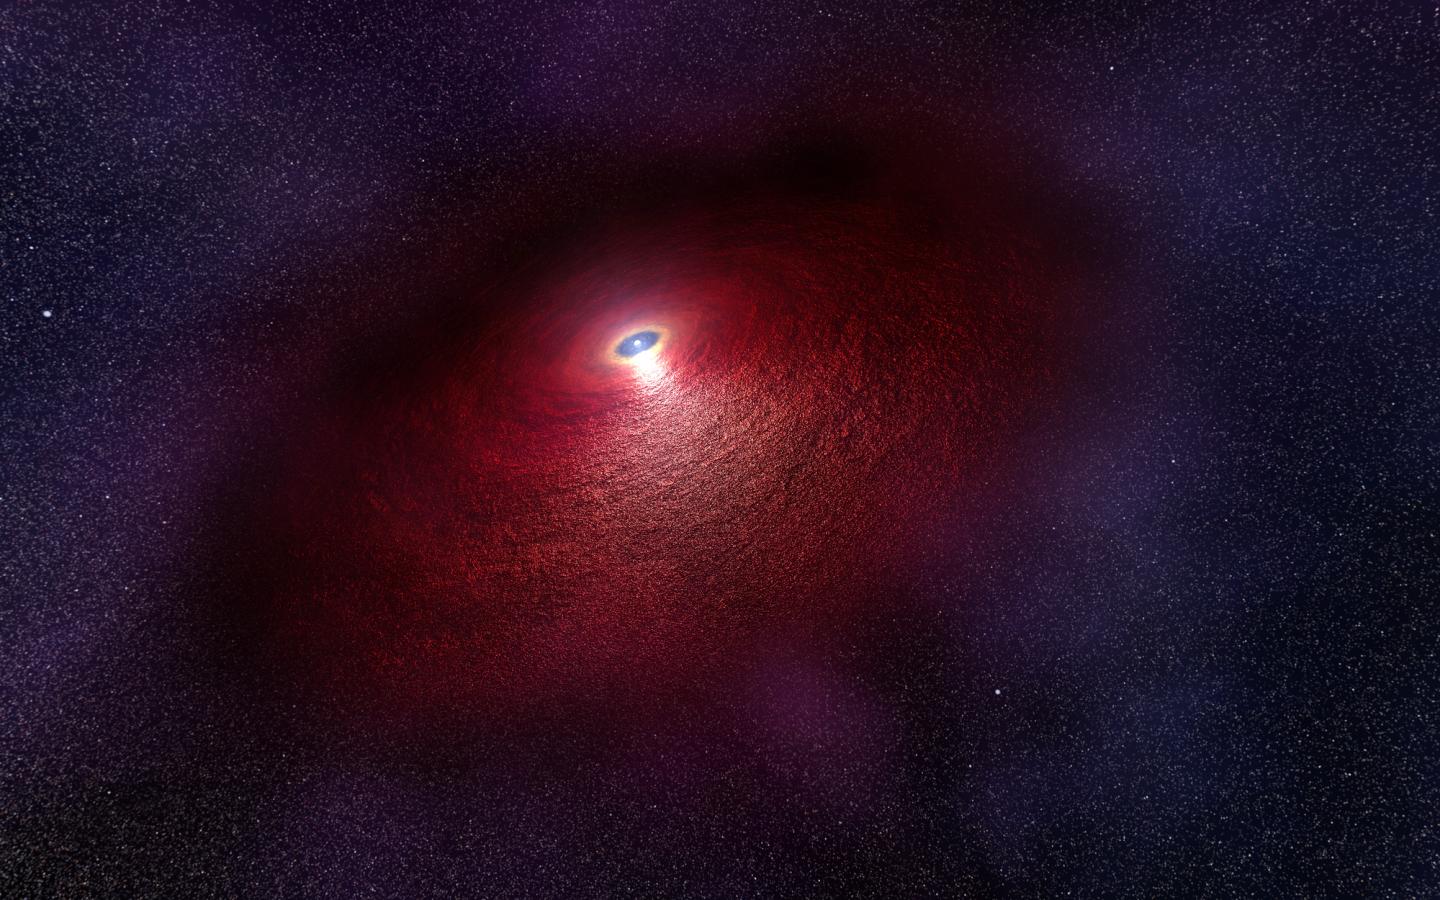 Artist's Impression of Disk Around a Neutron Star